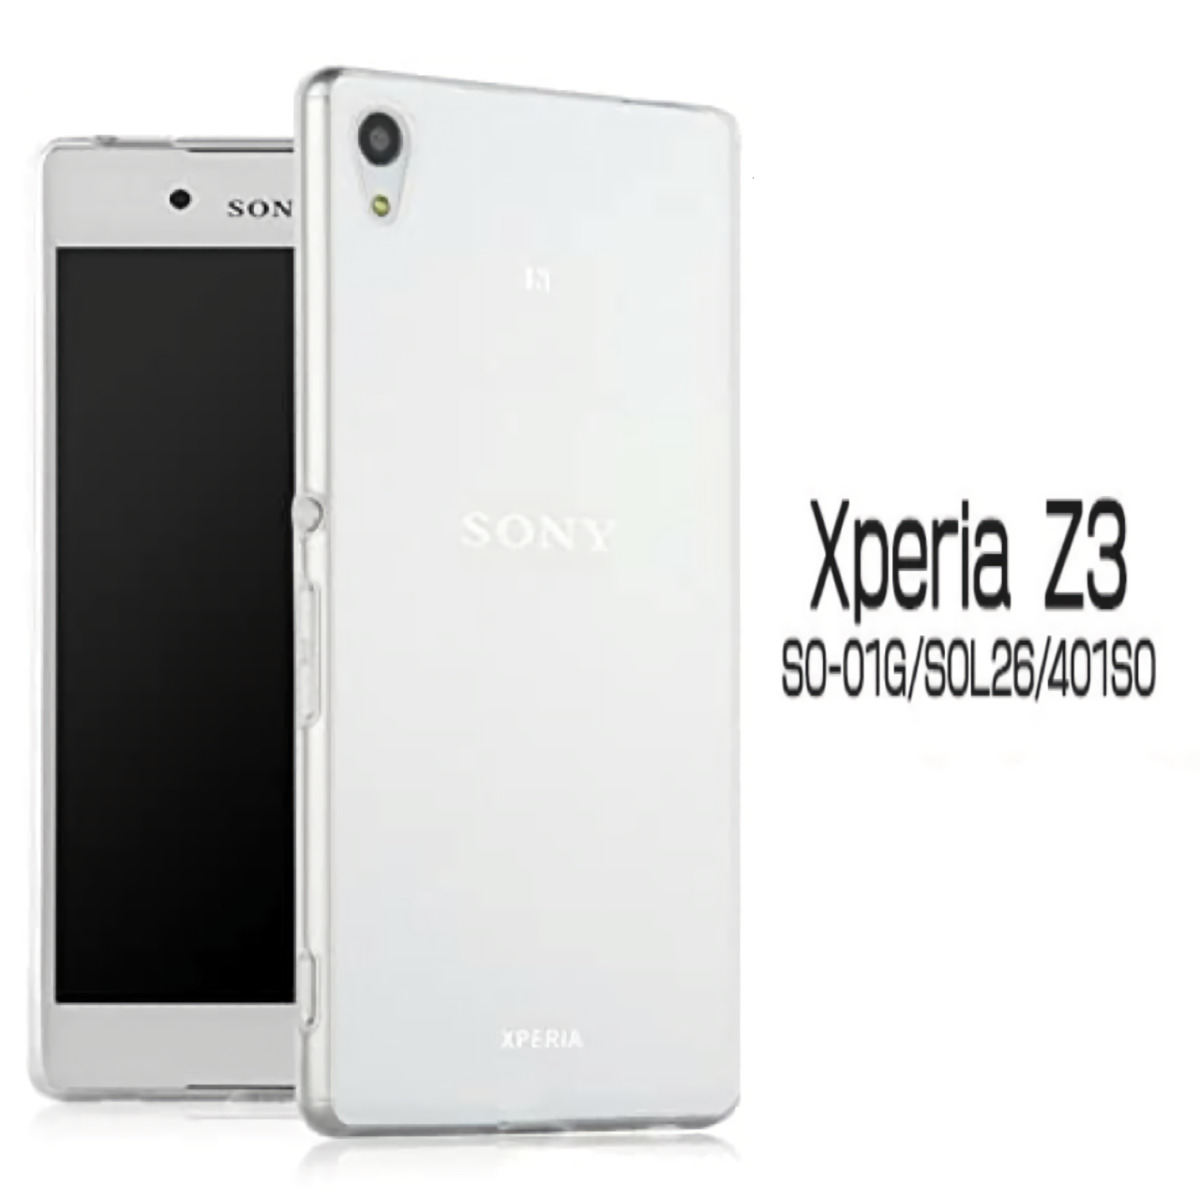 Xperia Z3 ハードケース ソフトケース クリアケース SO-01G SOL26 401SO エクスペリアZ3 エクスペディア  SO-01Gカバー SOL26カバー 401SOカバー SO-01Gケース SOL26ケース 401SOケース Z3カバー Z3ケース android  au 